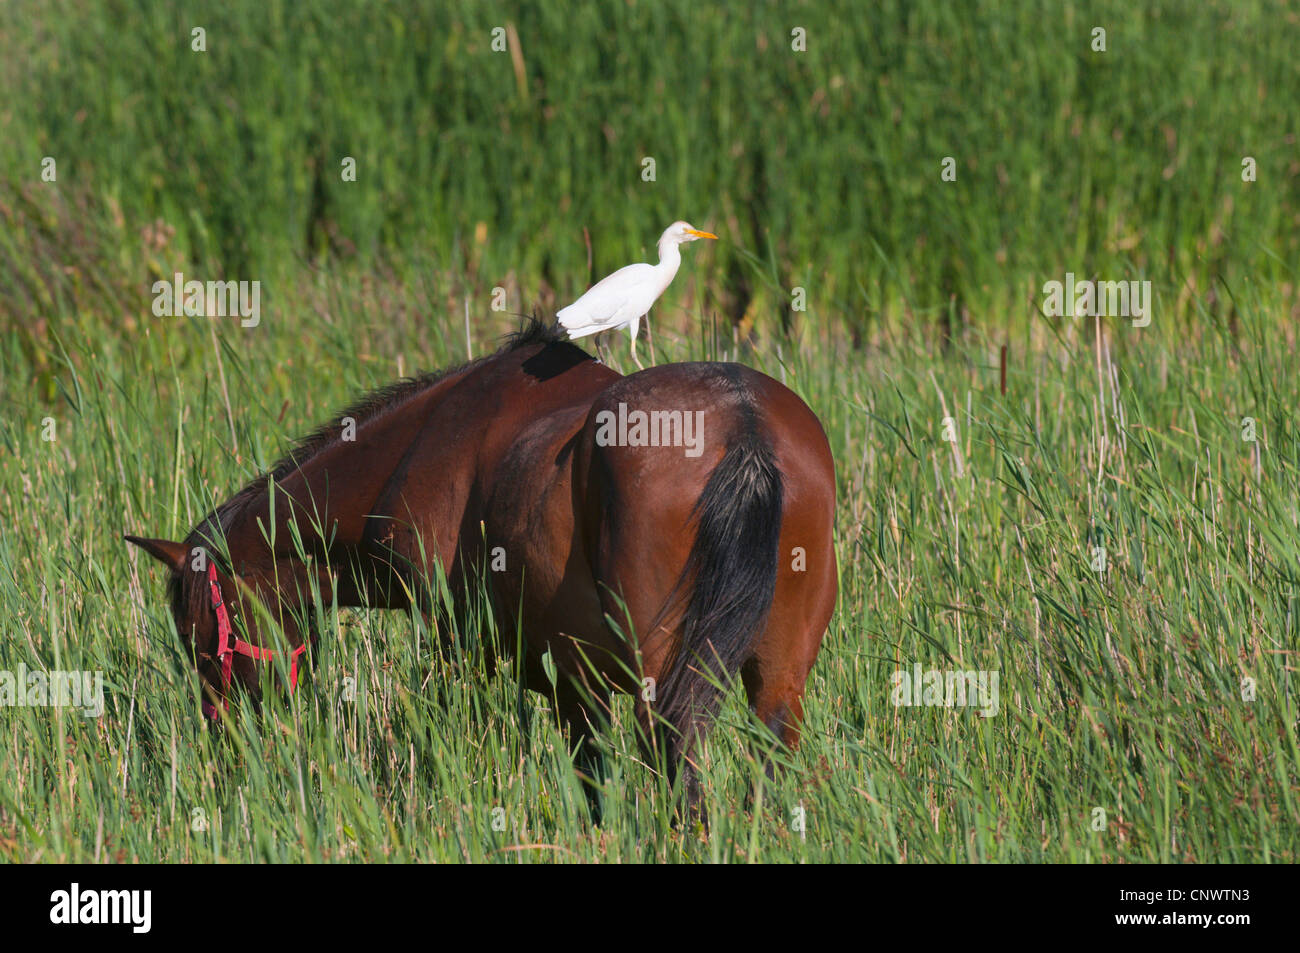 Héron garde-boeuf, buff-soutenu heron (Ardeola ibis, Bubulcus ibis), assis sur le dos d'un cheval brun, France, Camargue Banque D'Images